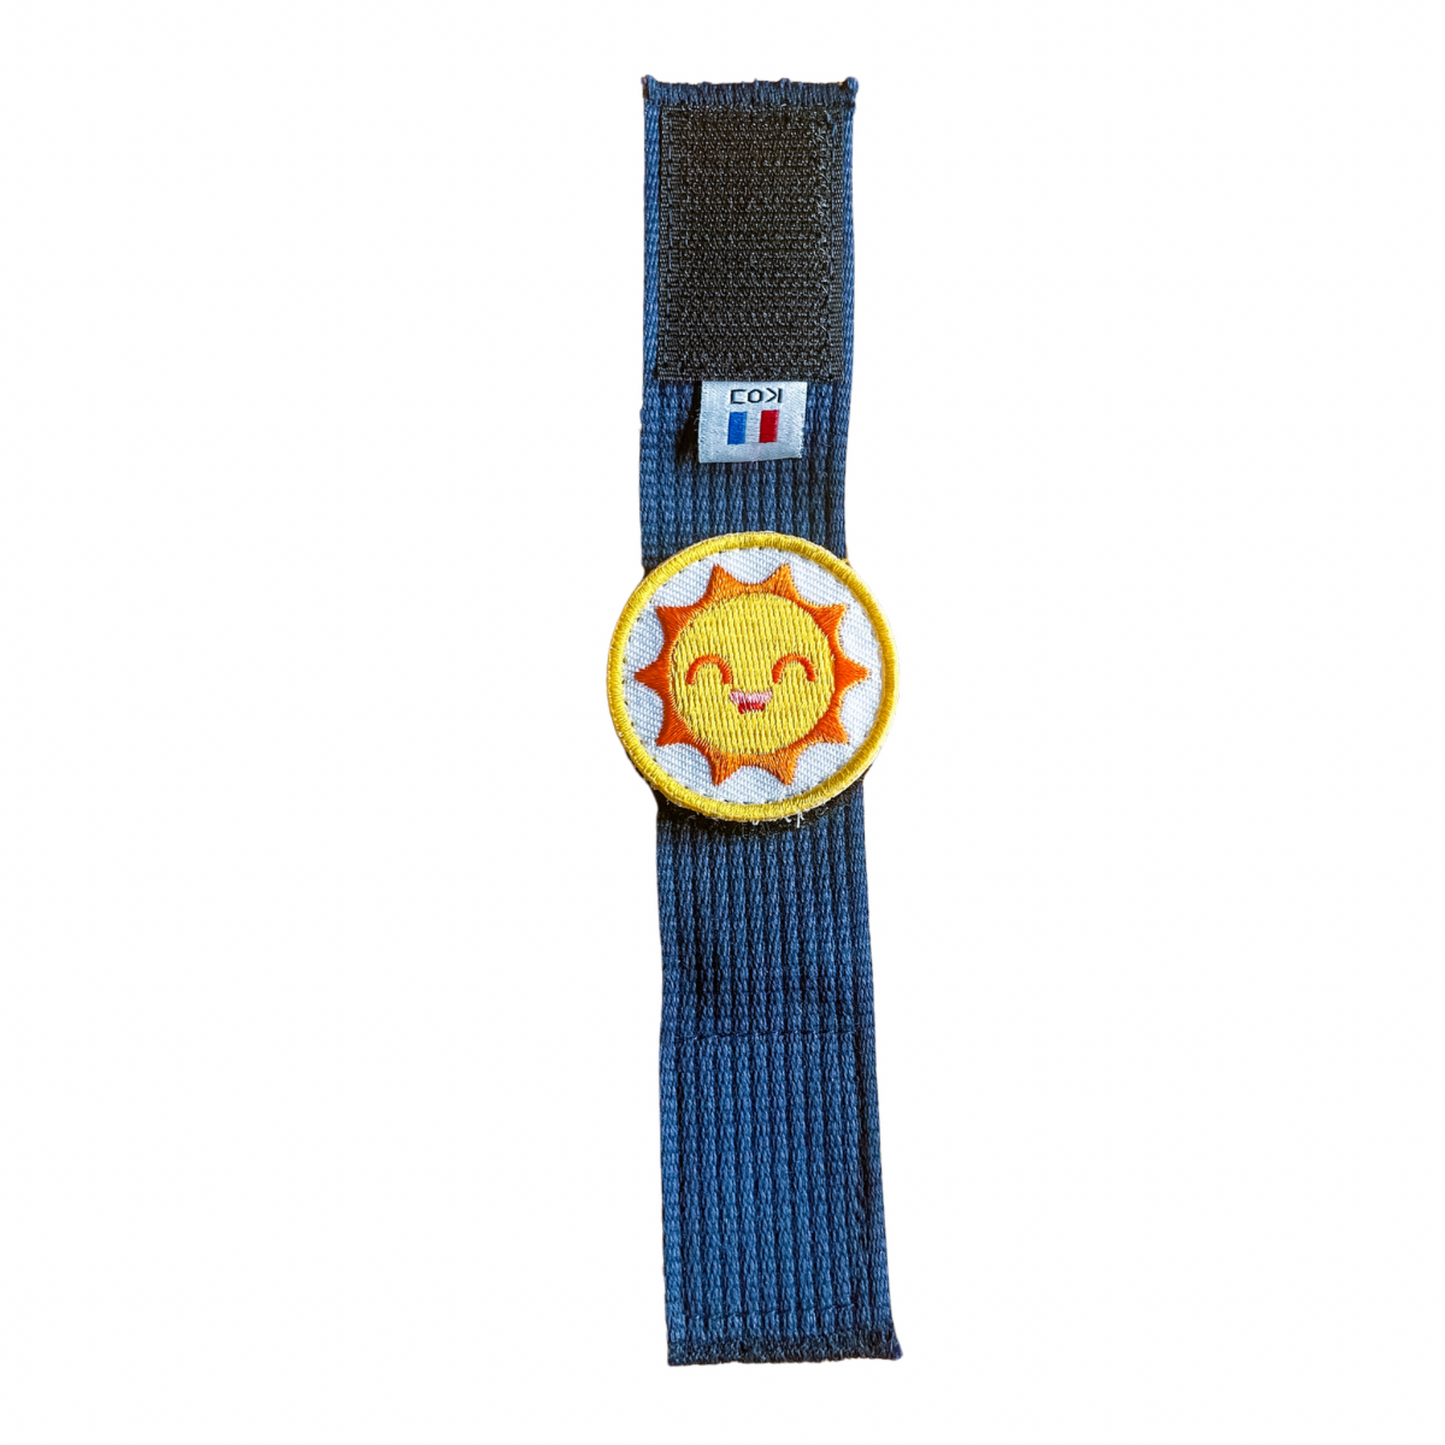 Le bracelet des Émotions 6 badges